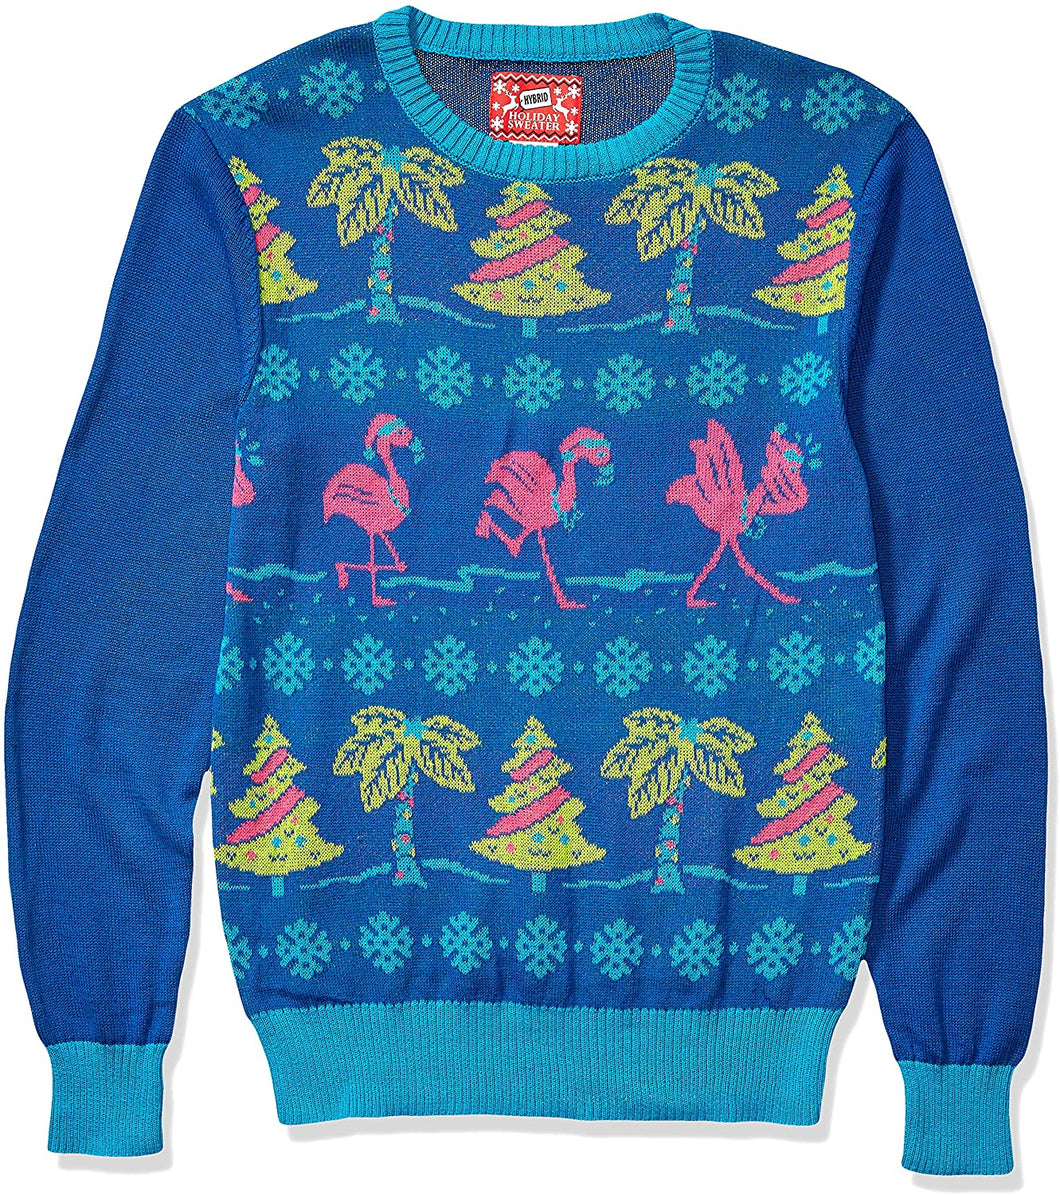 Men's Ugly Christmas Sweater - shop.beachguide.com